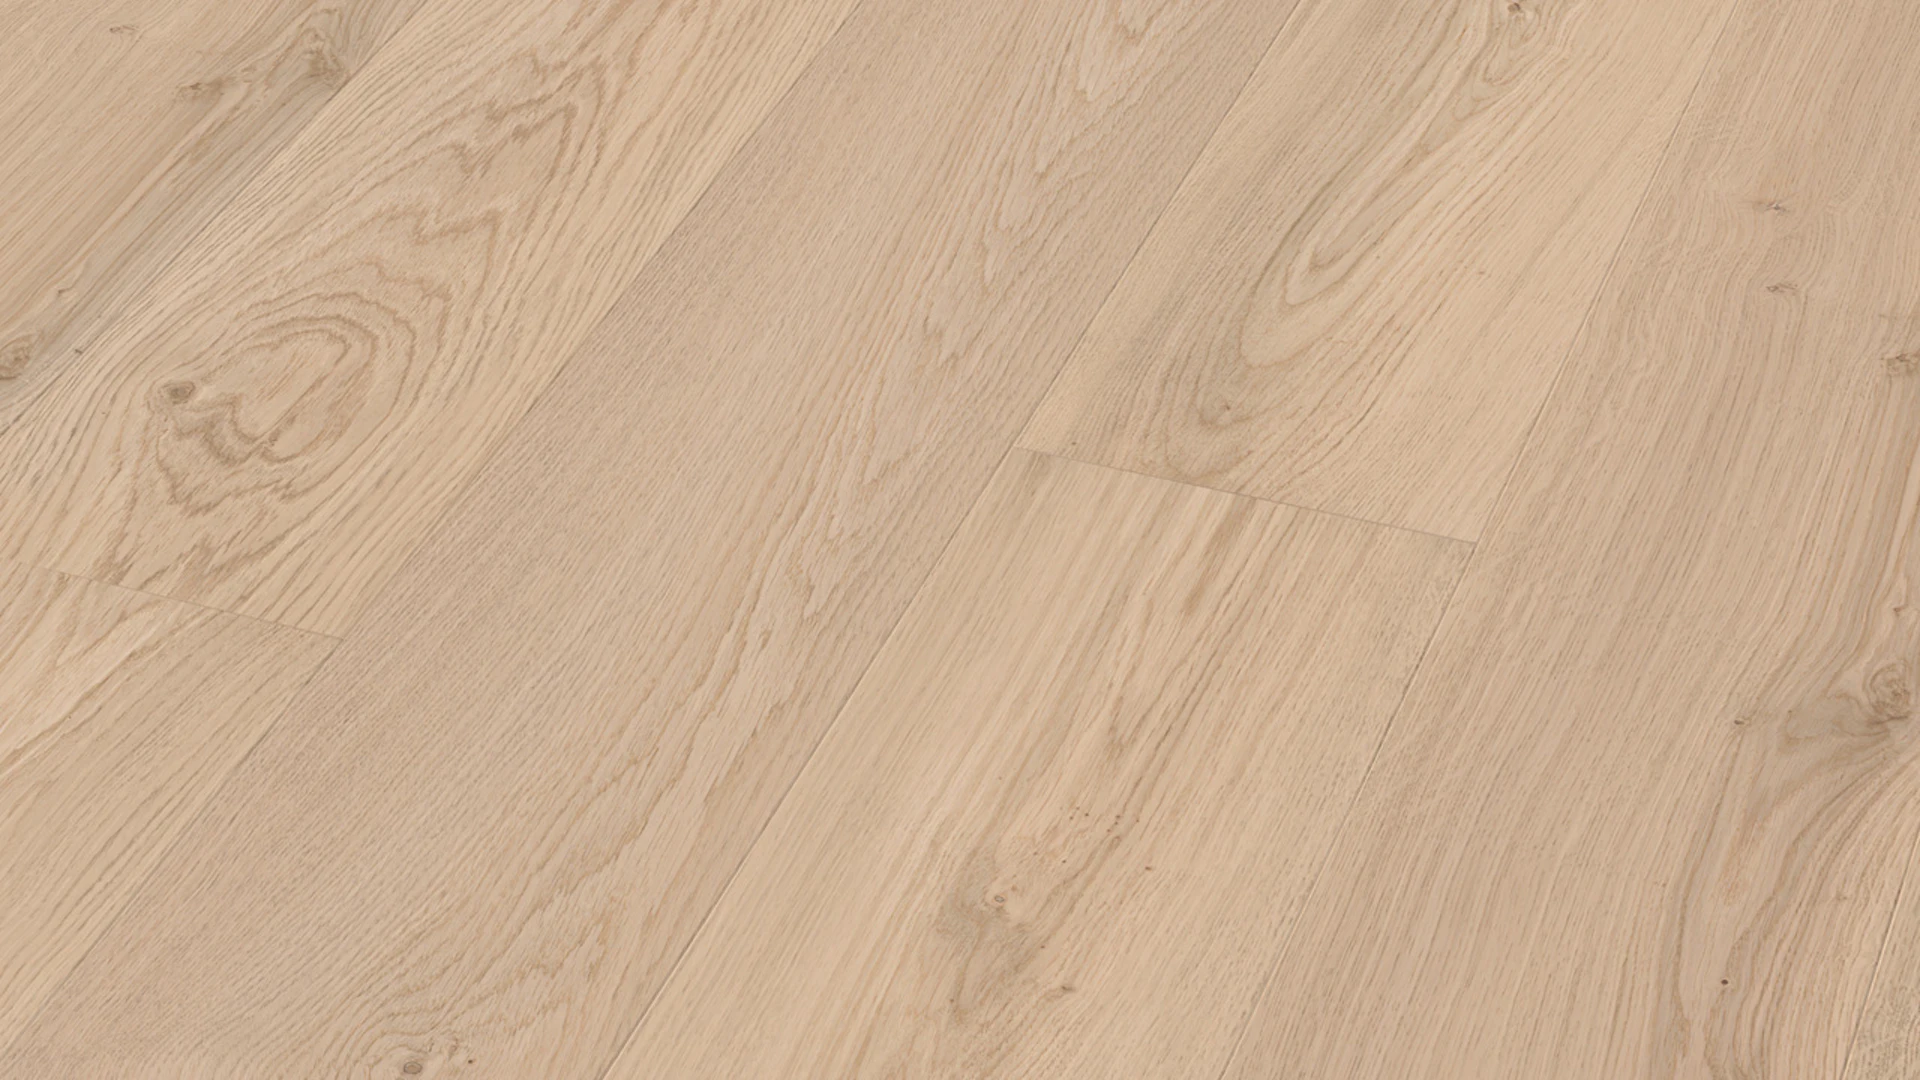 MEISTER Parquet Flooring - Lindura HD 400 Oak lively cream white (500013-2200205-08937)